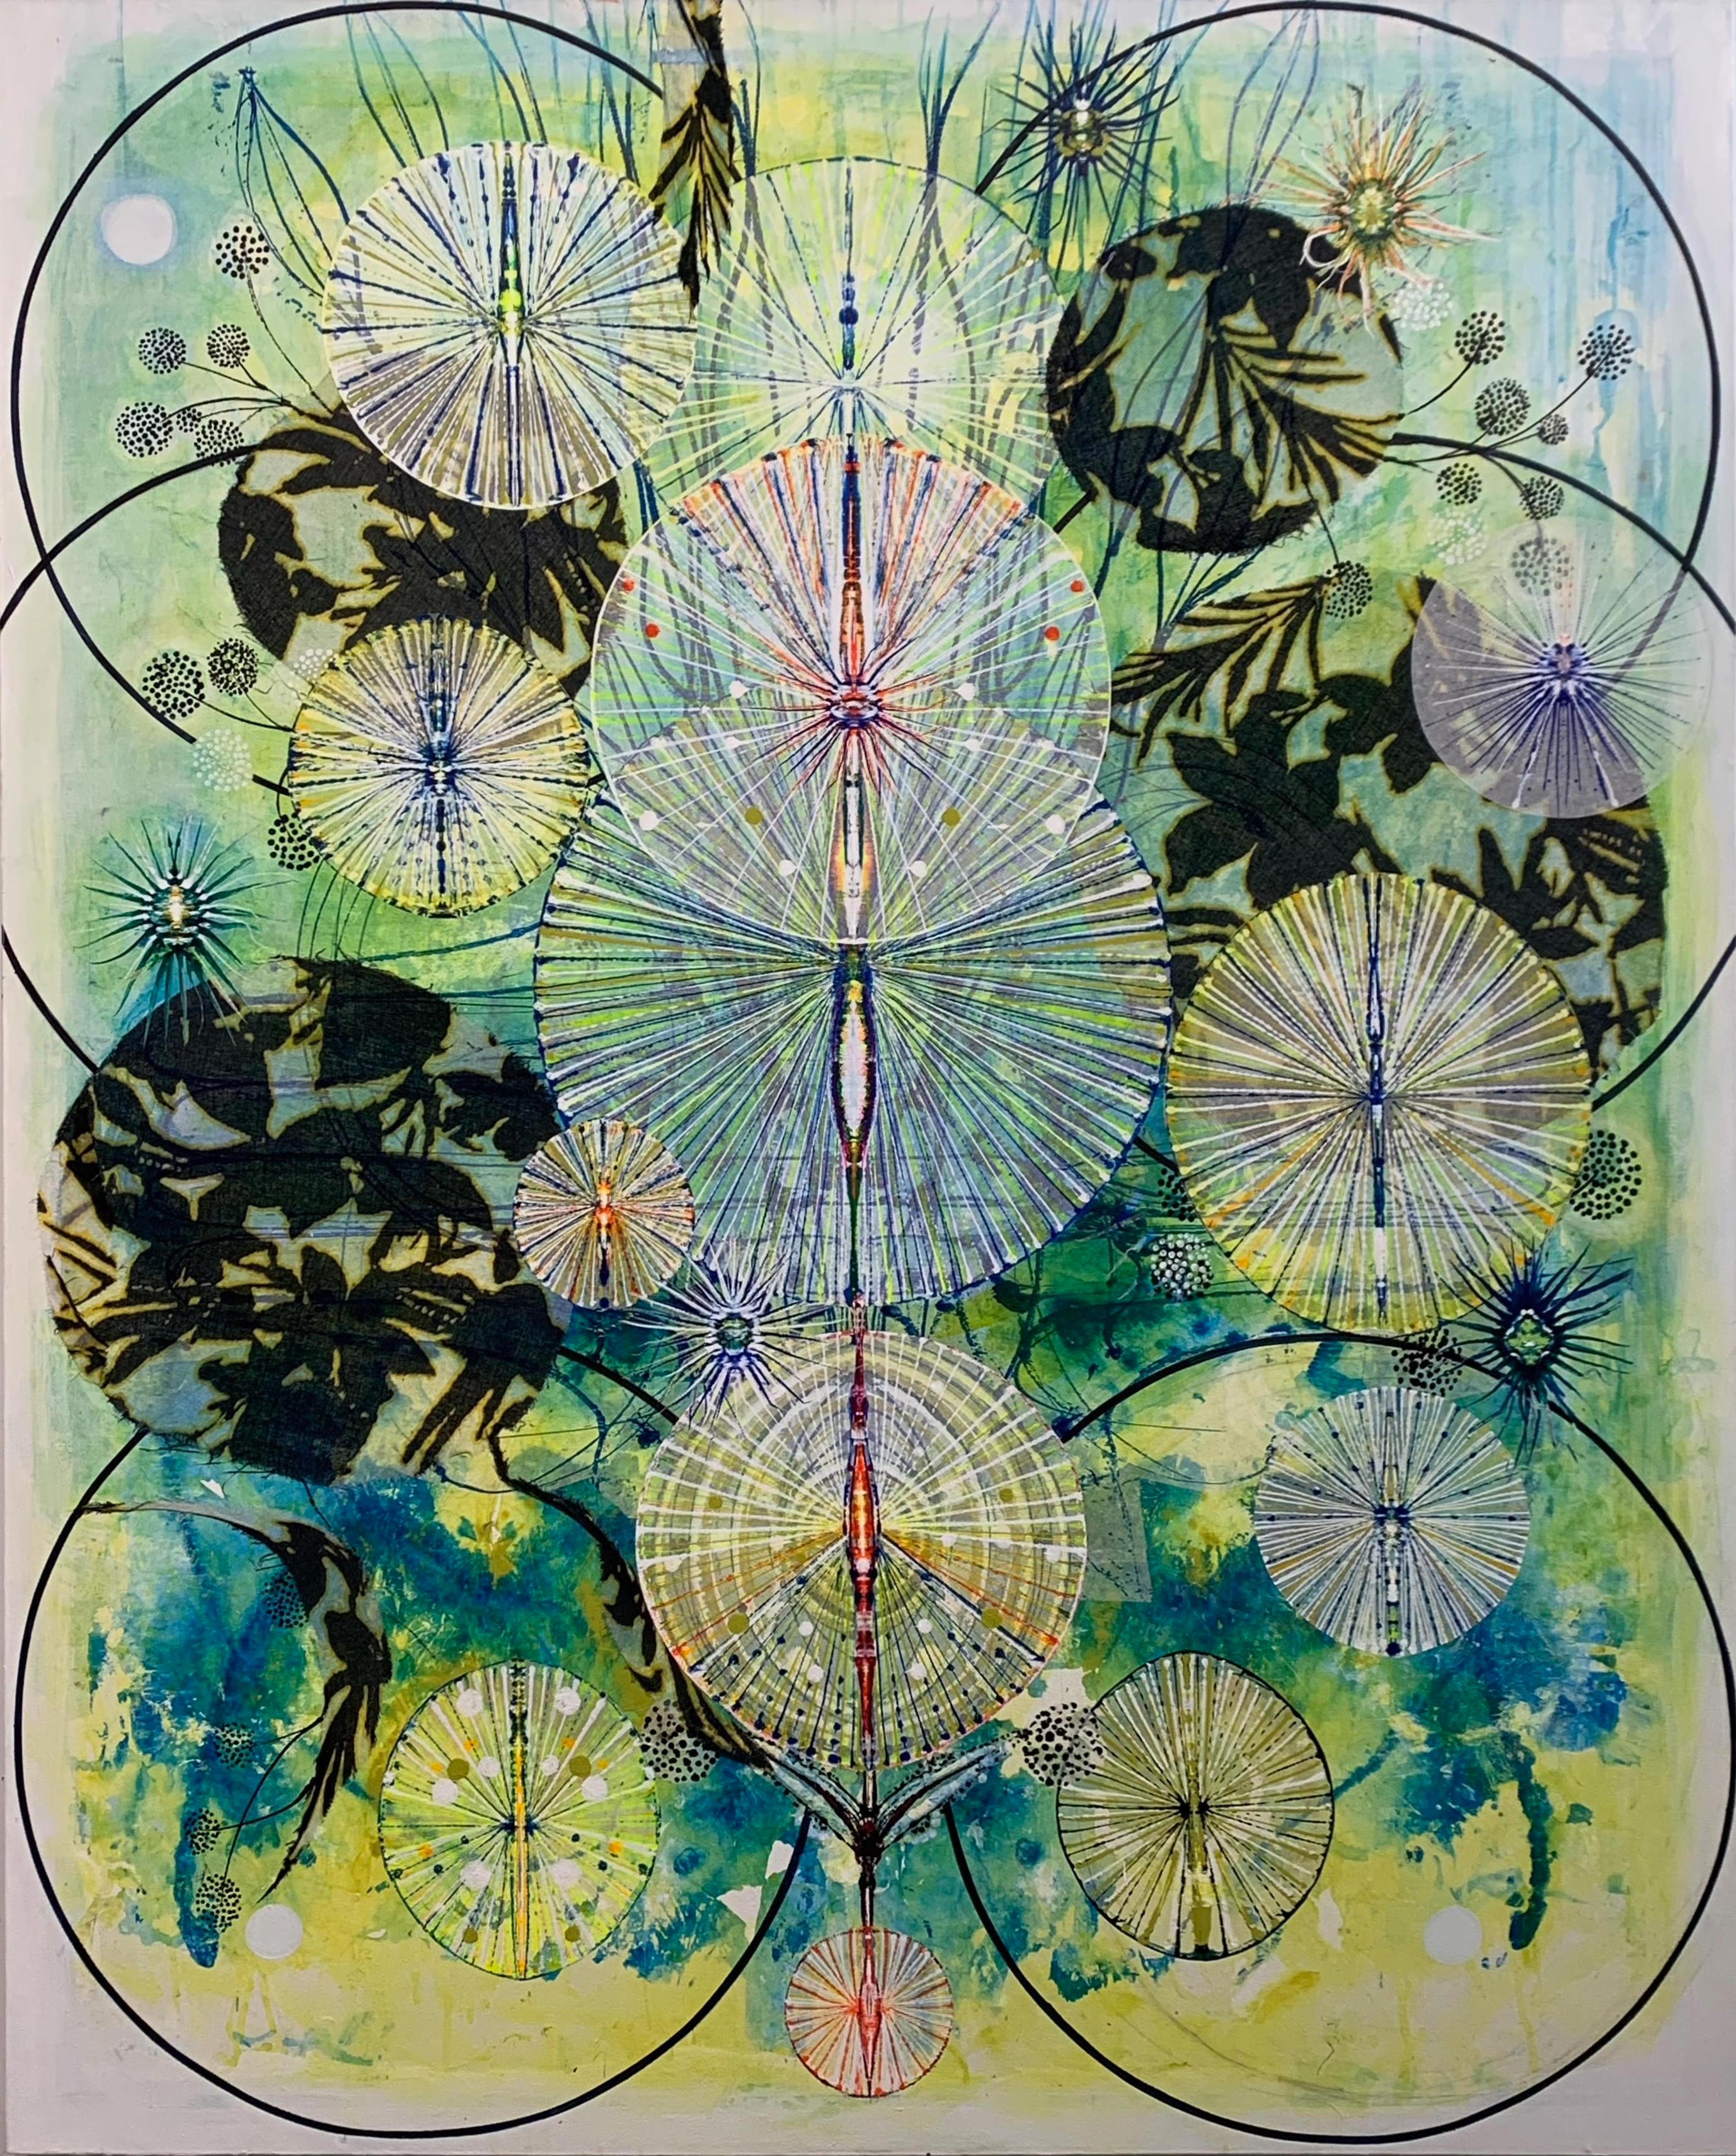 Susan Chrysler White Abstract Painting - Fertile Bones, Black Circles, Botanical Pattern on Blue, Lemon Yellow, Green